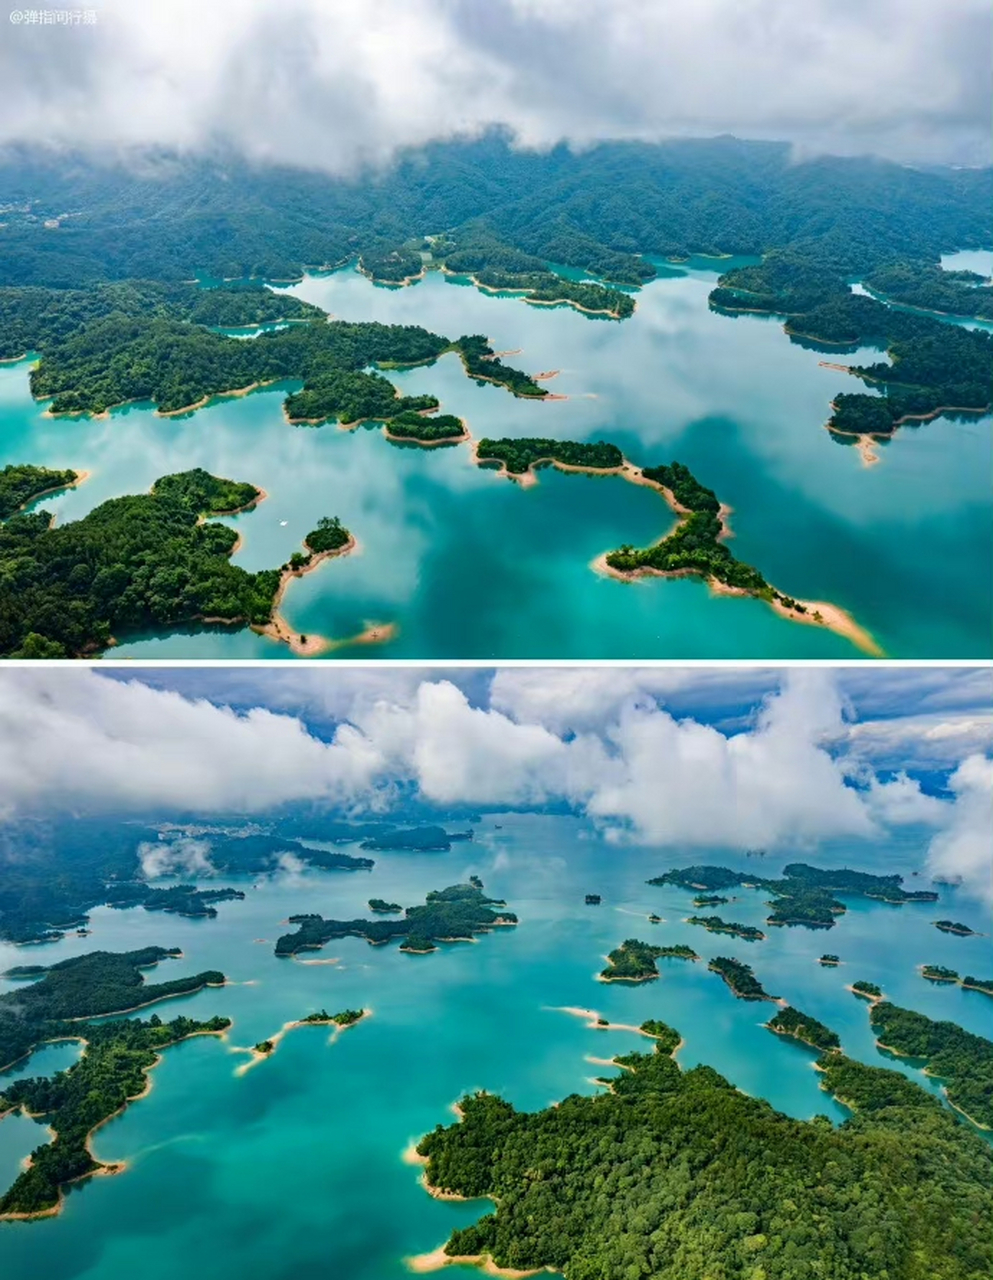 航拍广东河源万绿湖,风光美不胜收,与千岛湖相比,谁更胜一筹呢?